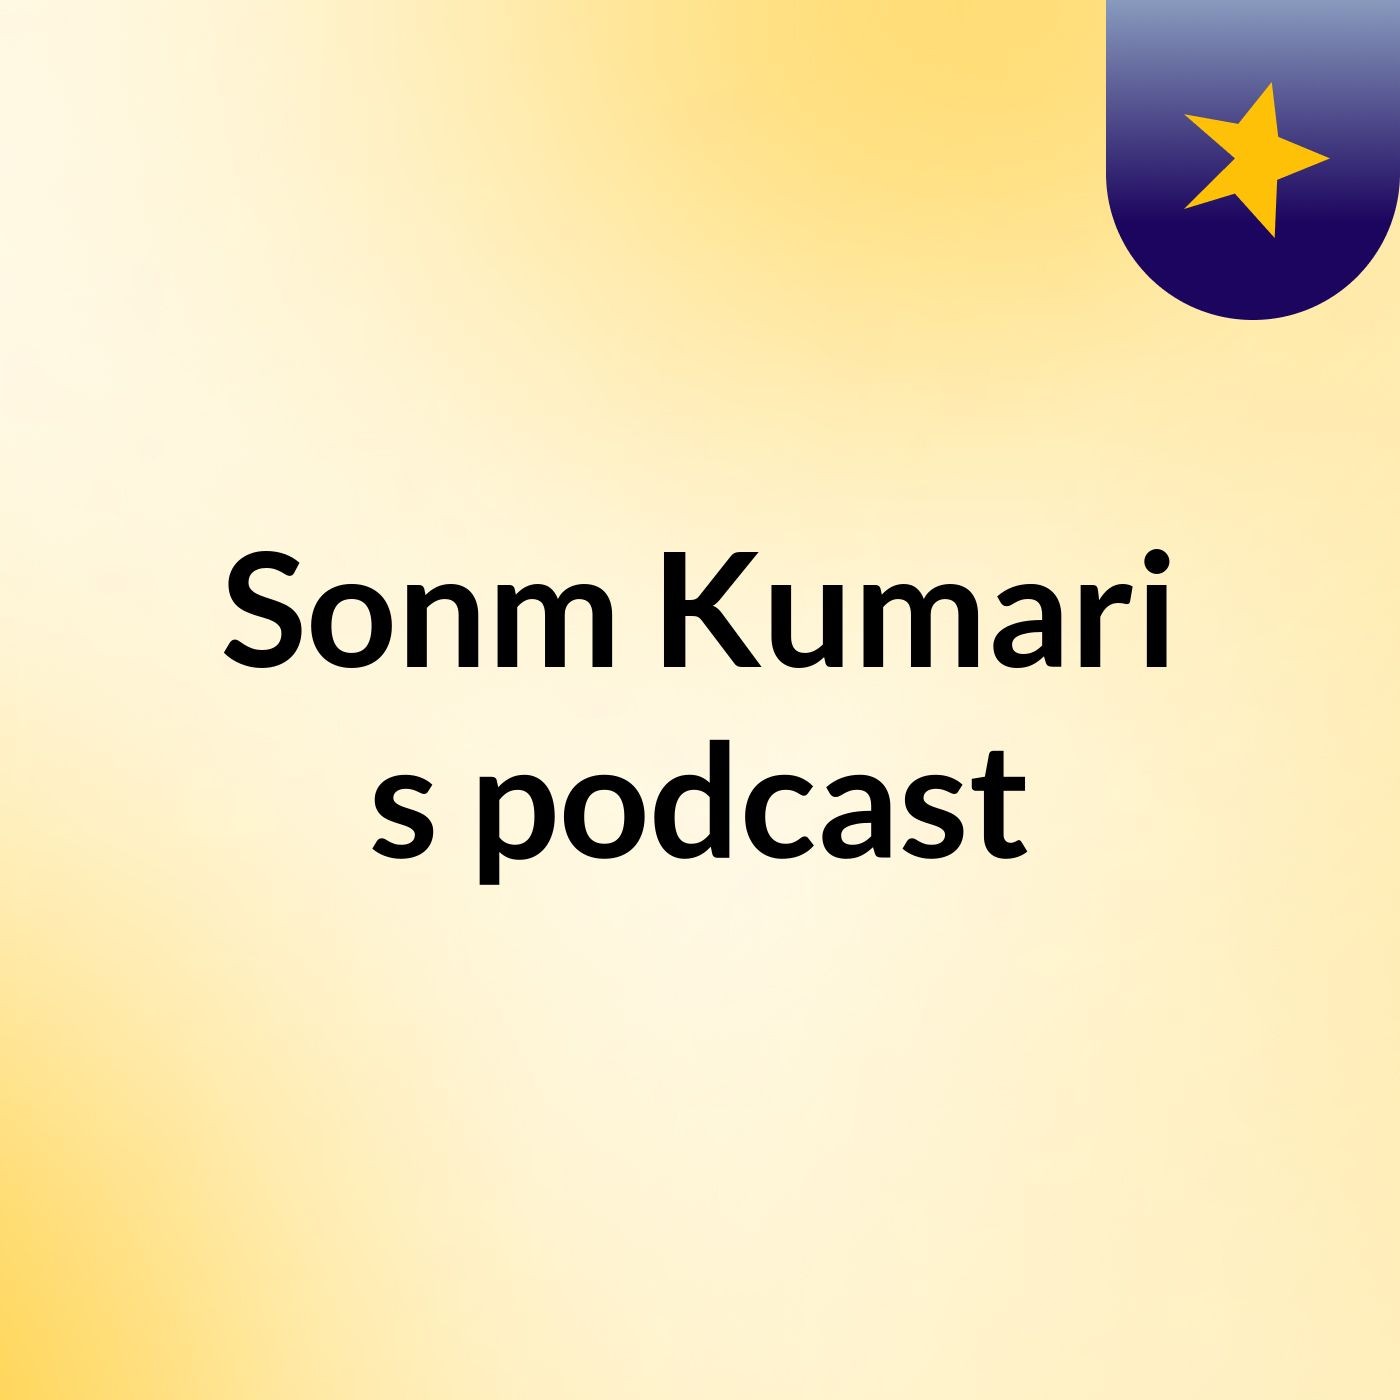 Sonm Kumari's podcast